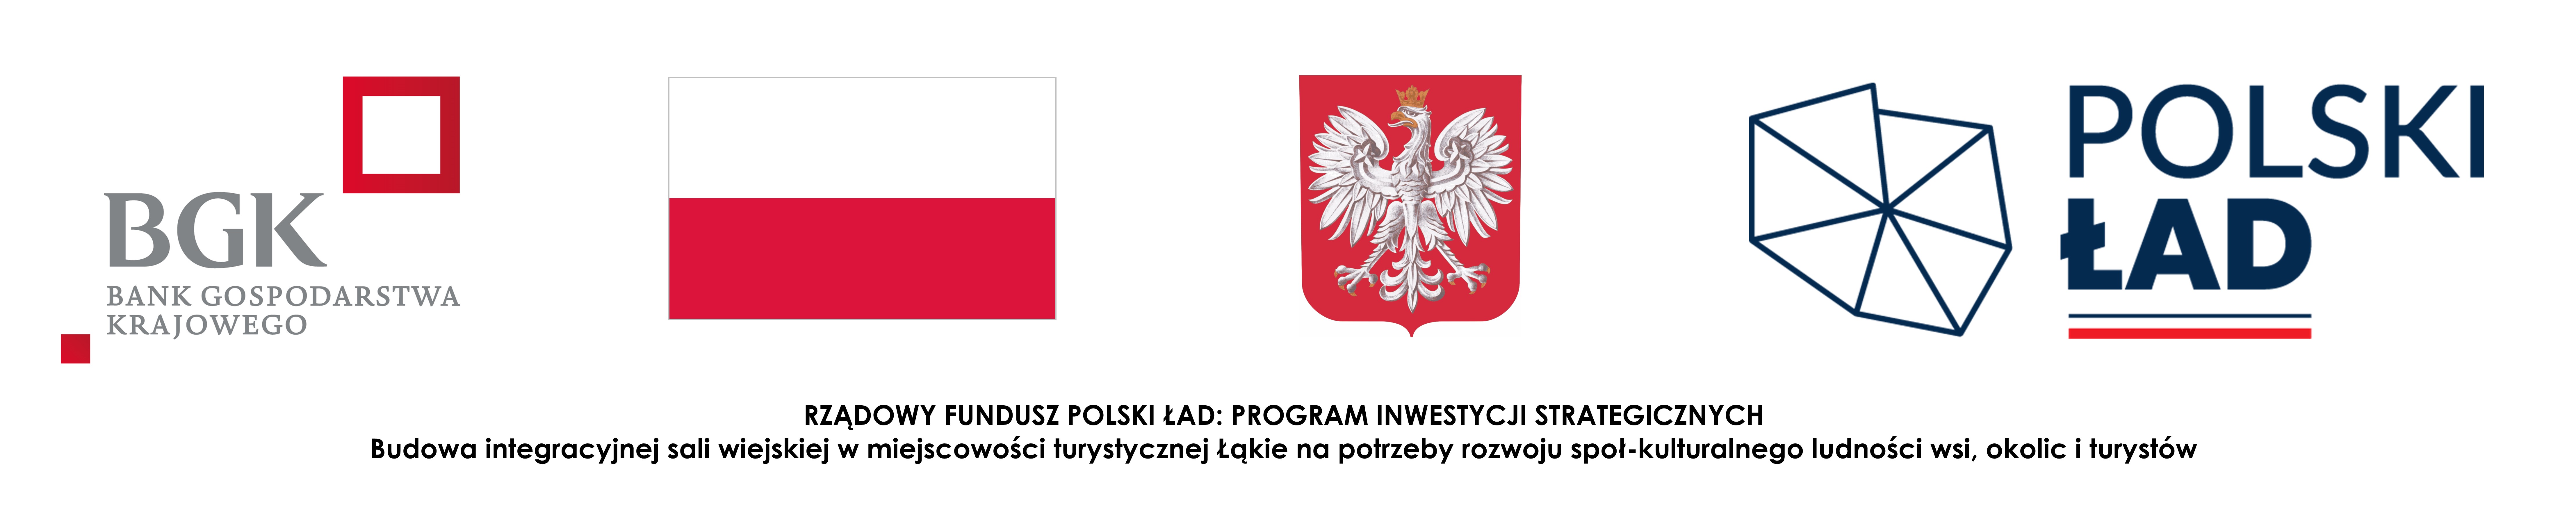 Logotypy Polski Ład 